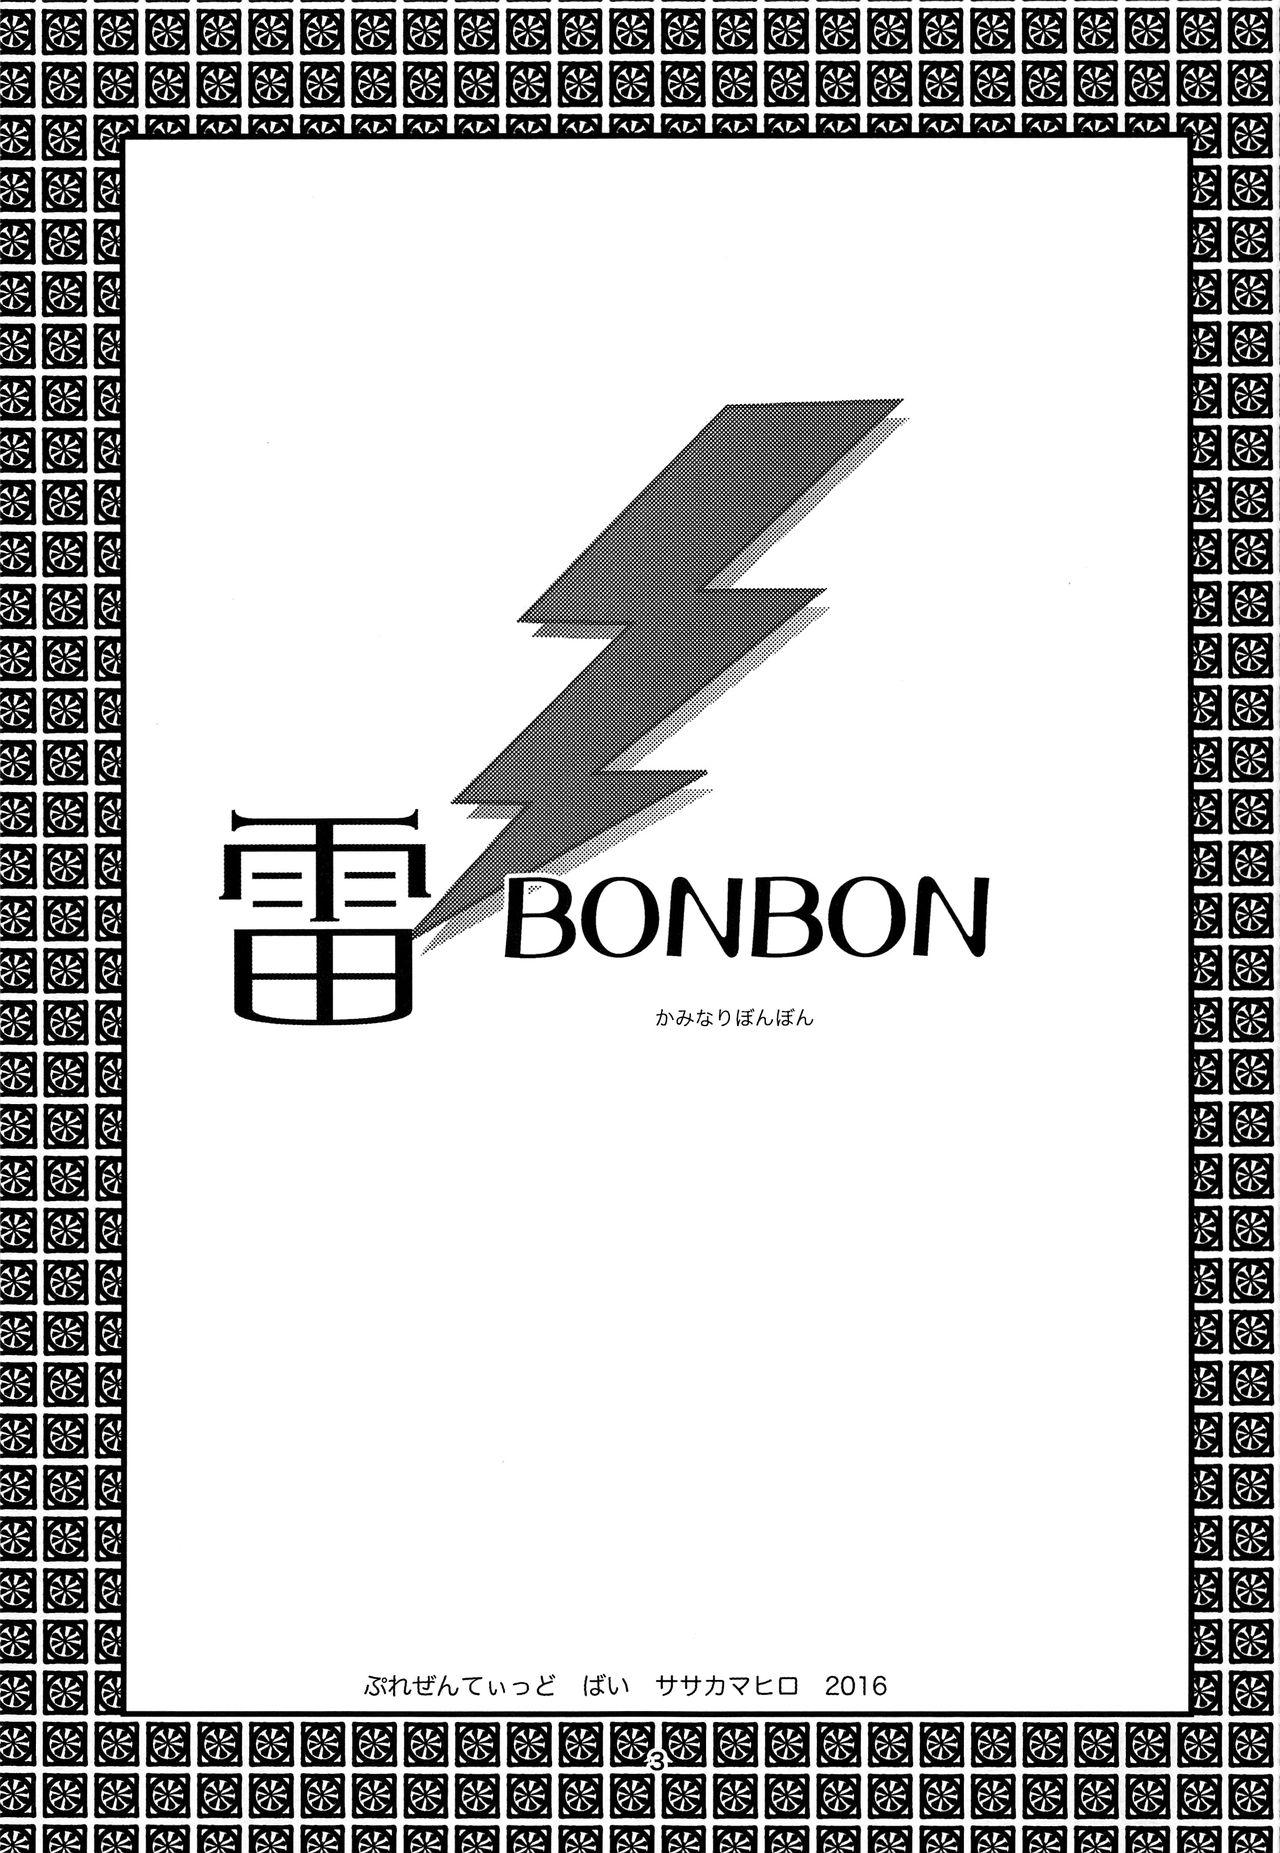 Kaminari BONBON 2